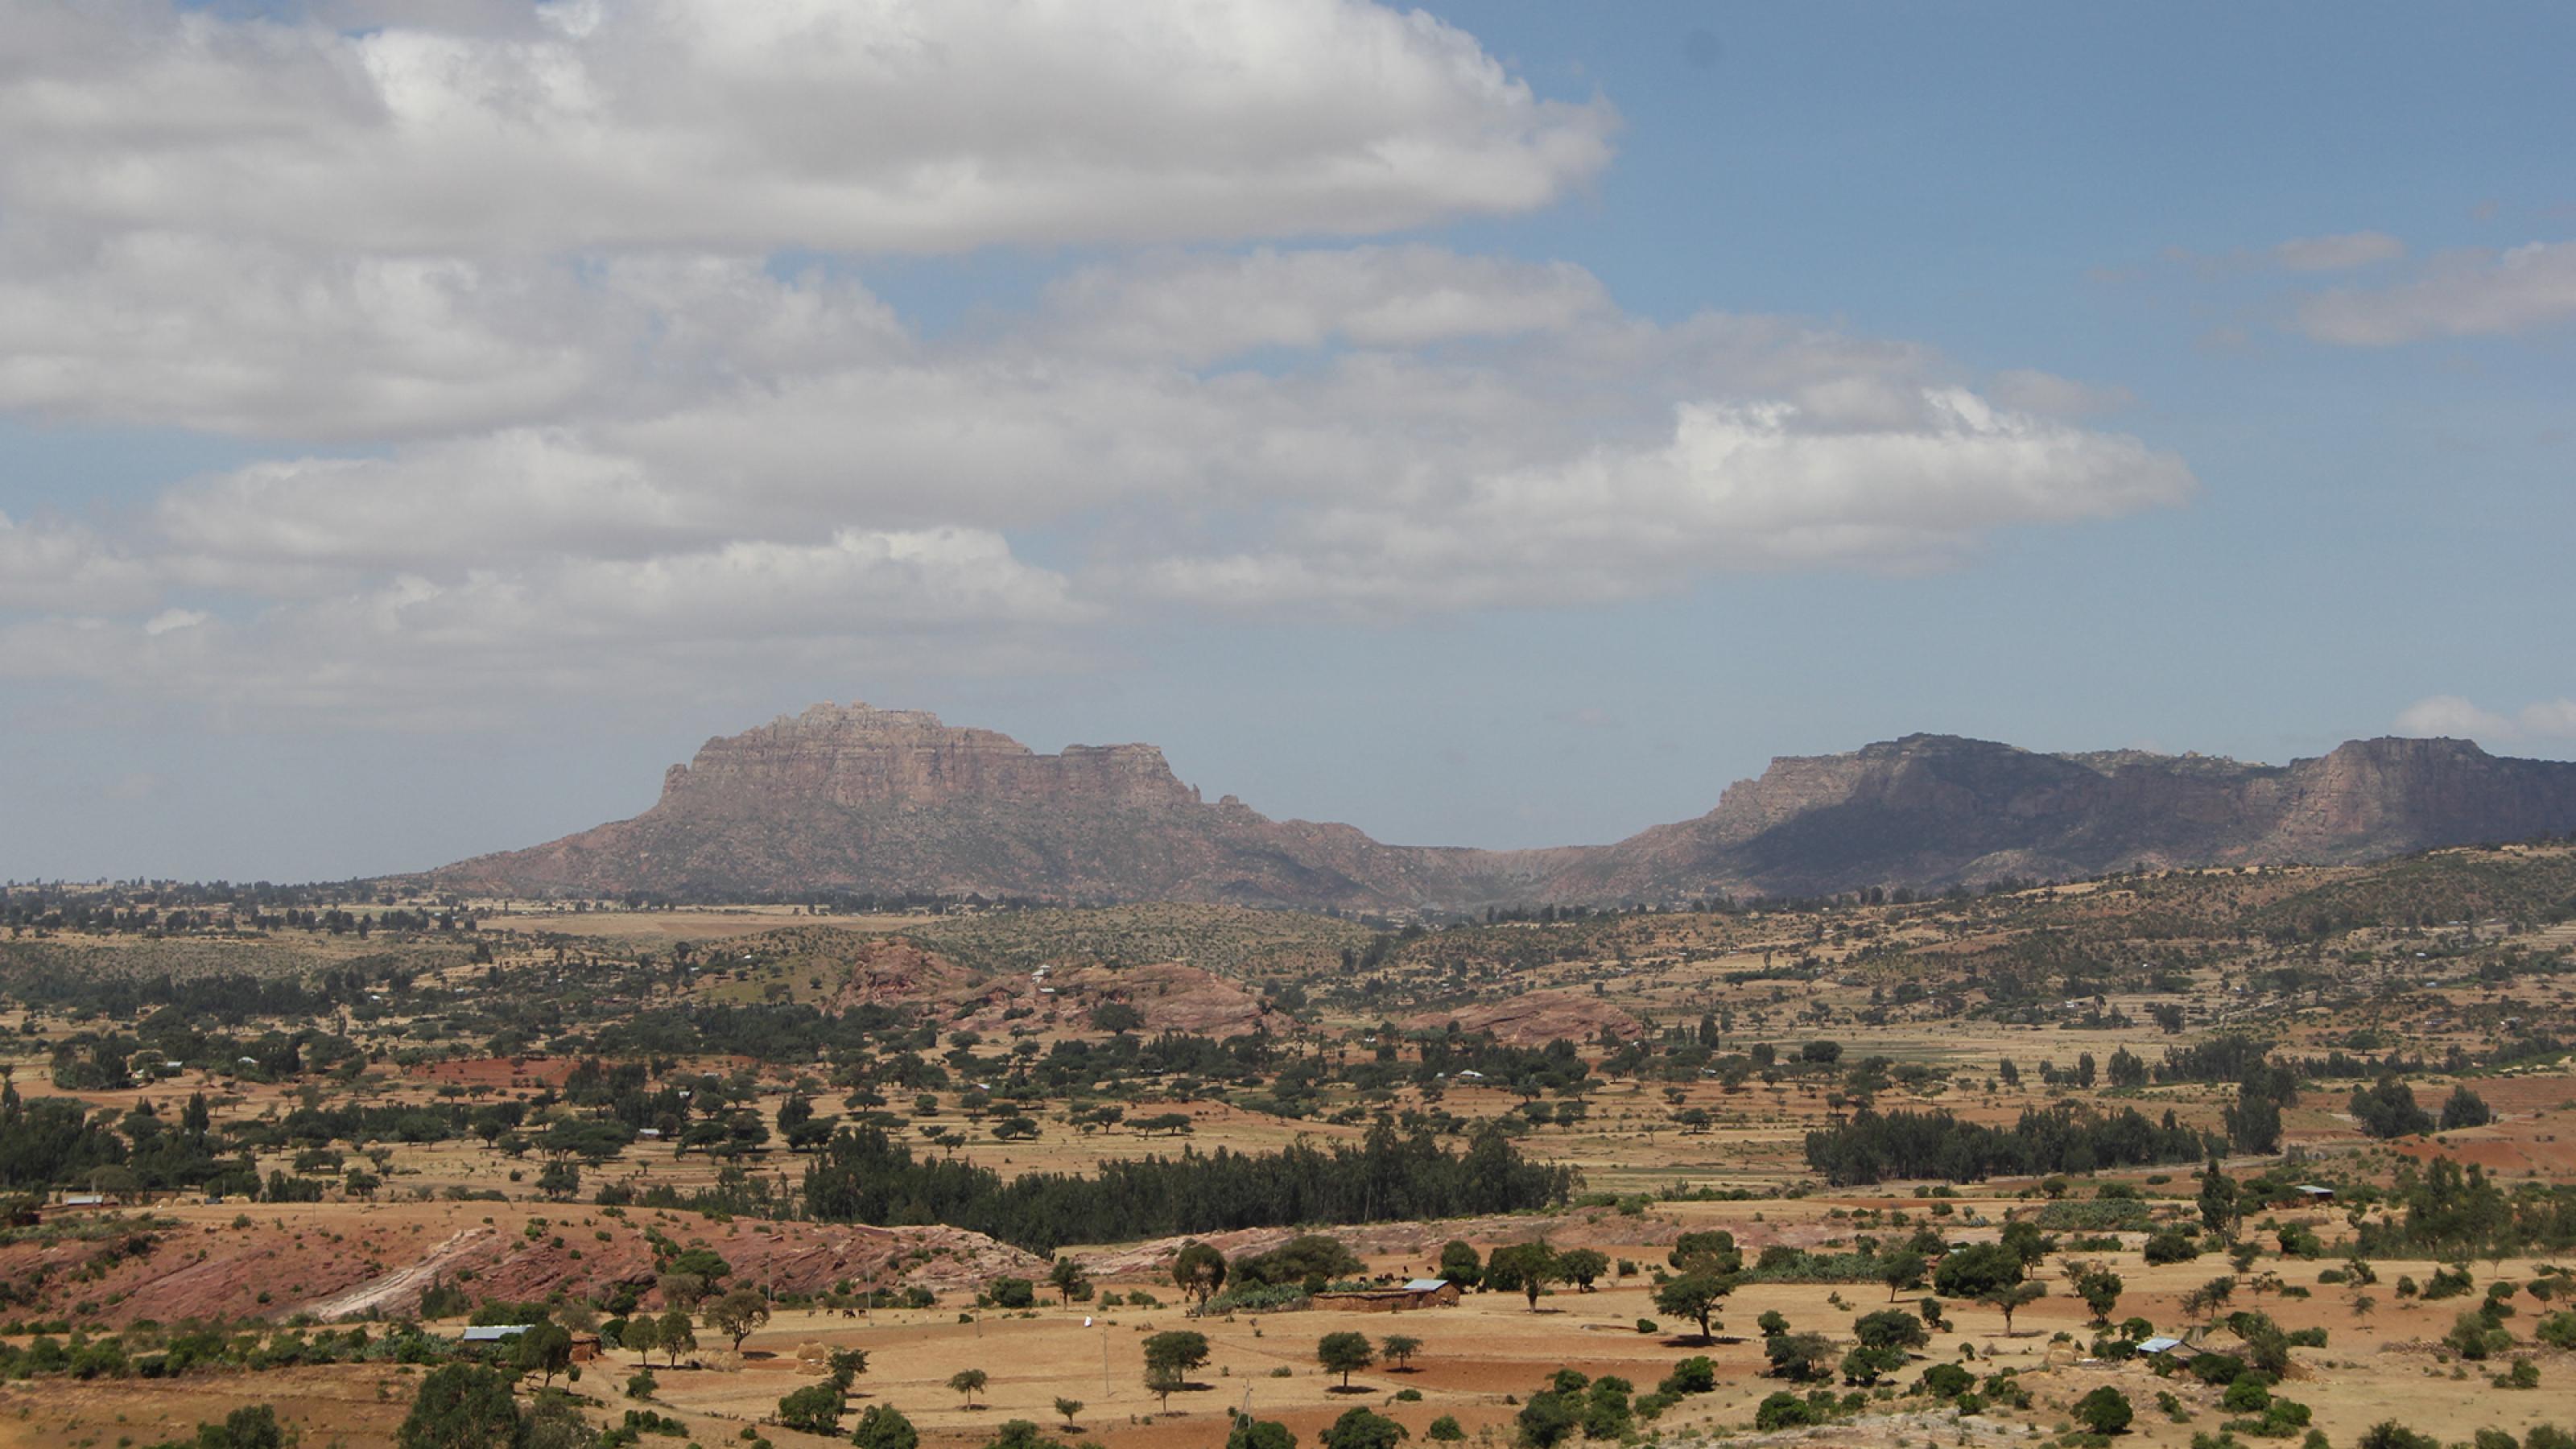 Blick über eine karge, hügelige Landschaft in Äthiopien  mit weiten Feldern und Bäumen. Die Weizenfelder sind abgeerntet, dazwischen sieht man rotes Gestein und kleine Baumgruppen. Im Hintergrund erstrecken sich hohe Bergketten.